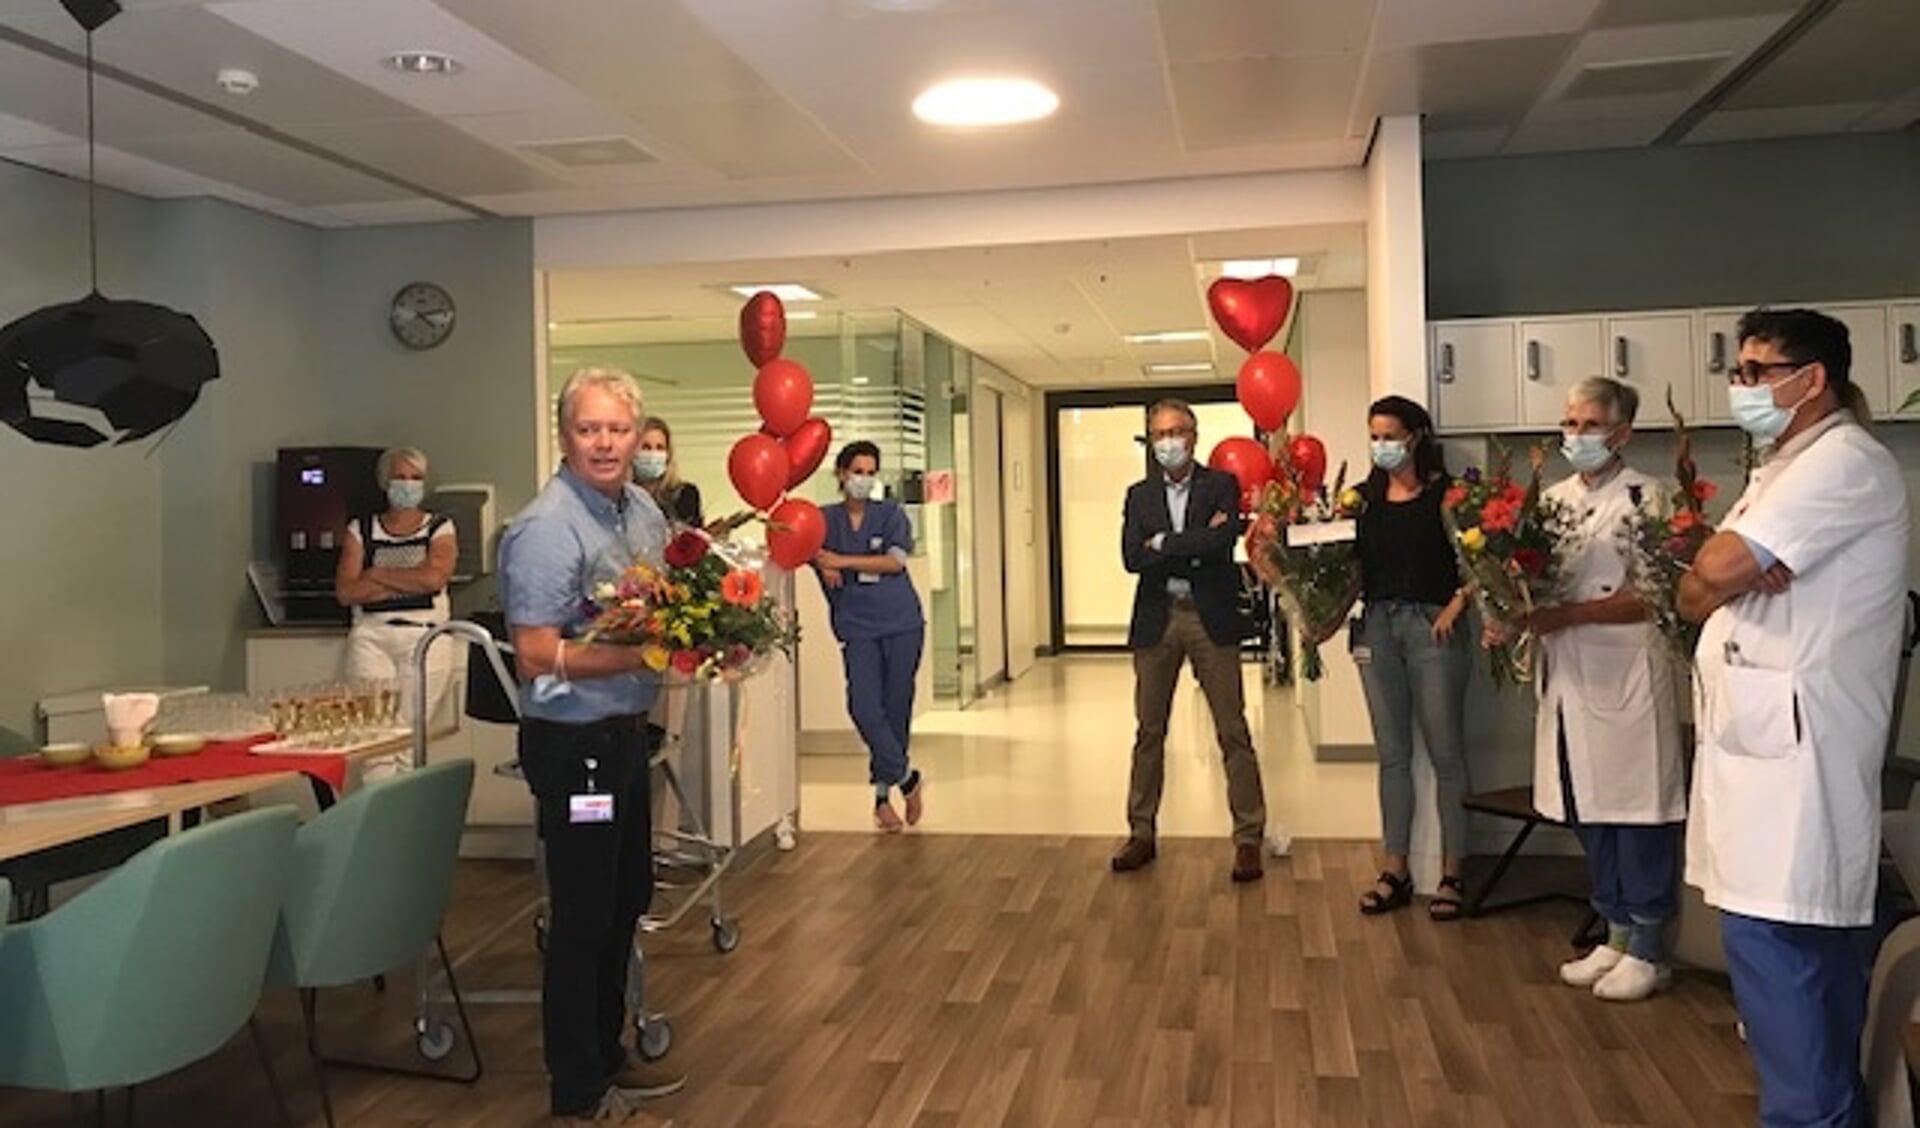 Unithoofd Cardiologie Riny van der Ven (links) spreekt zijn collega’s toe tijdens de opening van de hartlounge.